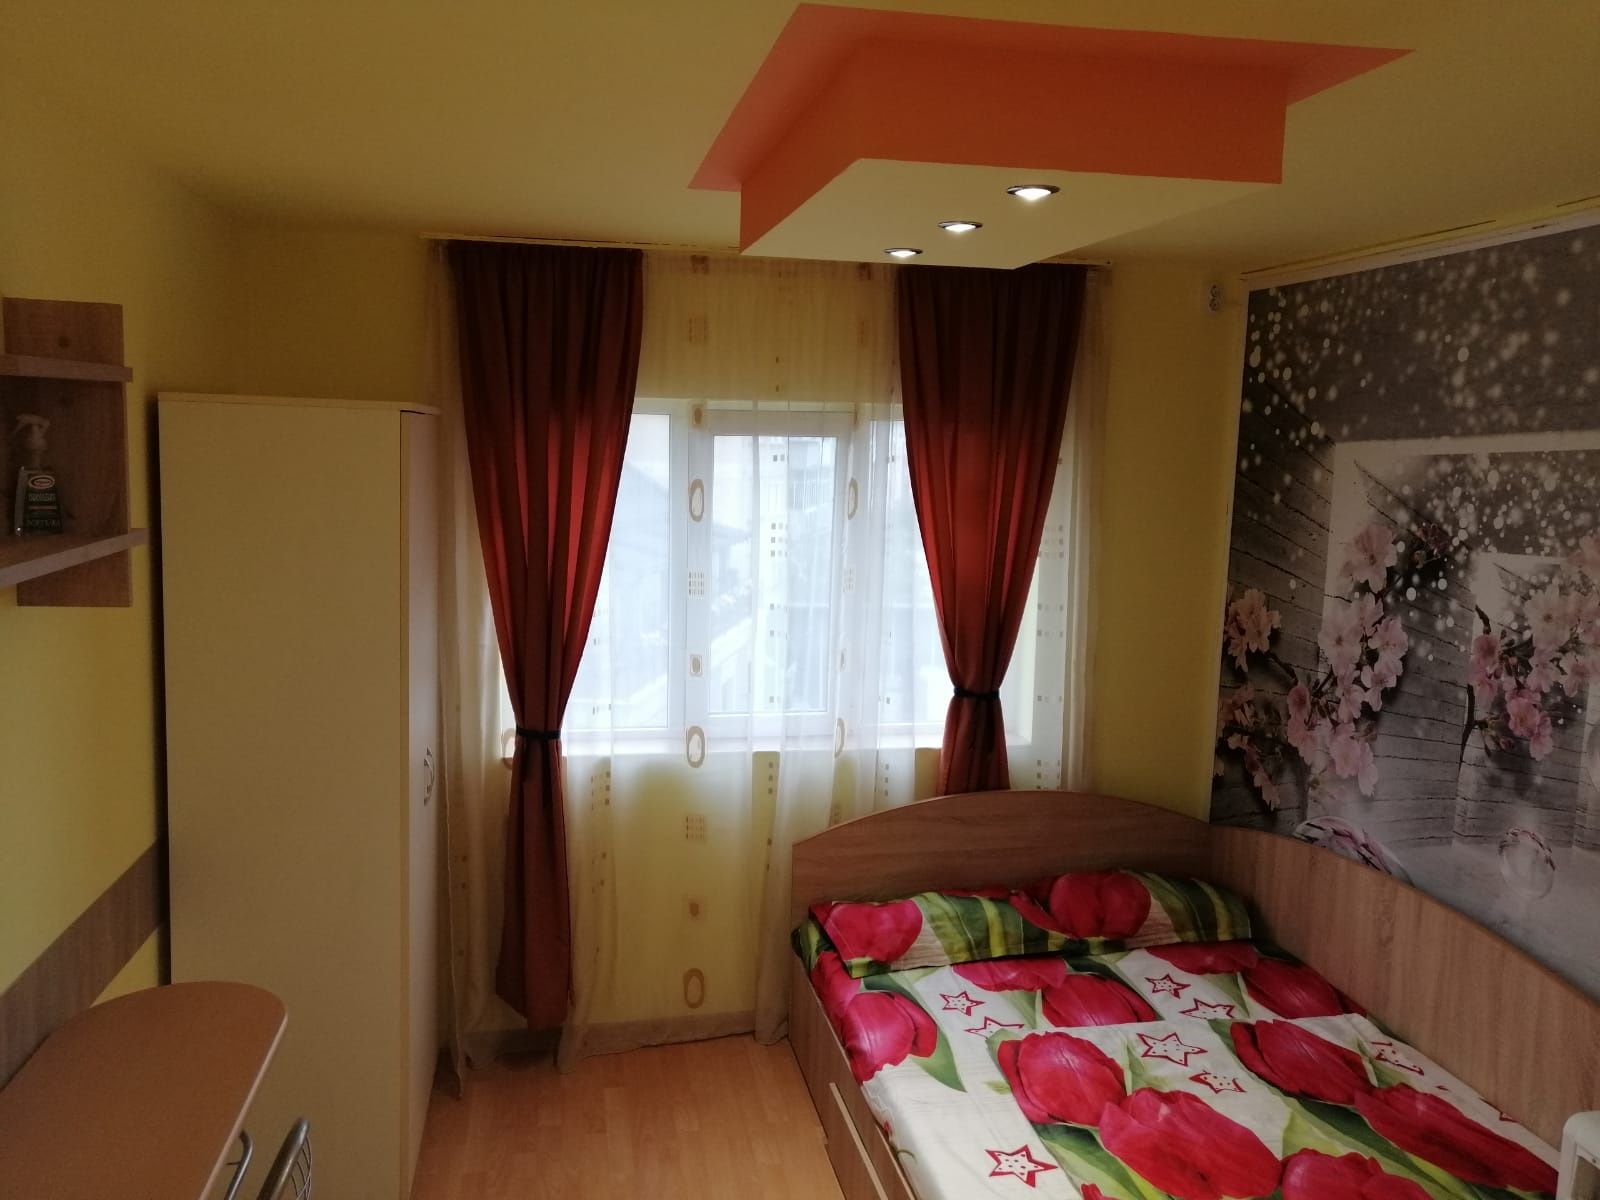 Apartament cu o camera in regim hotelier Timișoara Spitalul Judetean